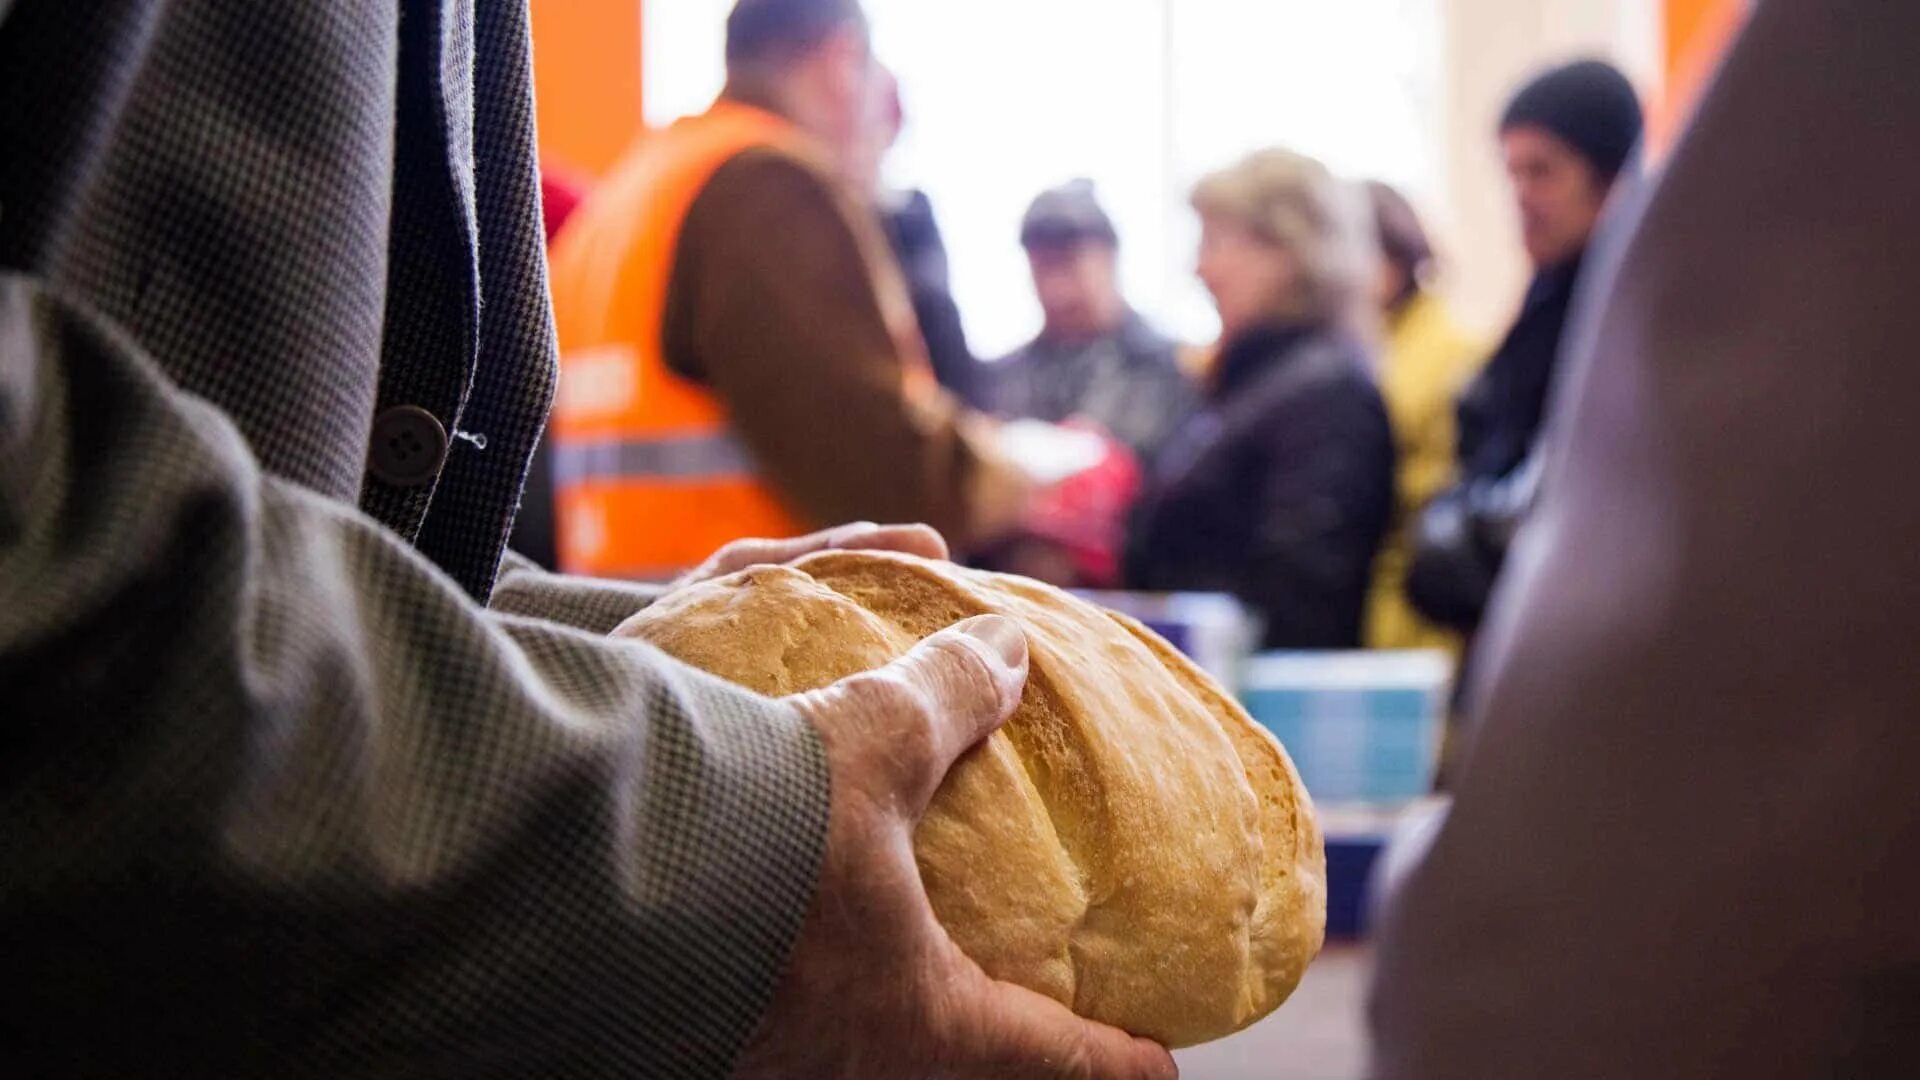 Раздача хлеба. Хлеб еда для бедных. Хлеб для нуждающихся. Человек хлеб. Страны нуждающиеся в людях